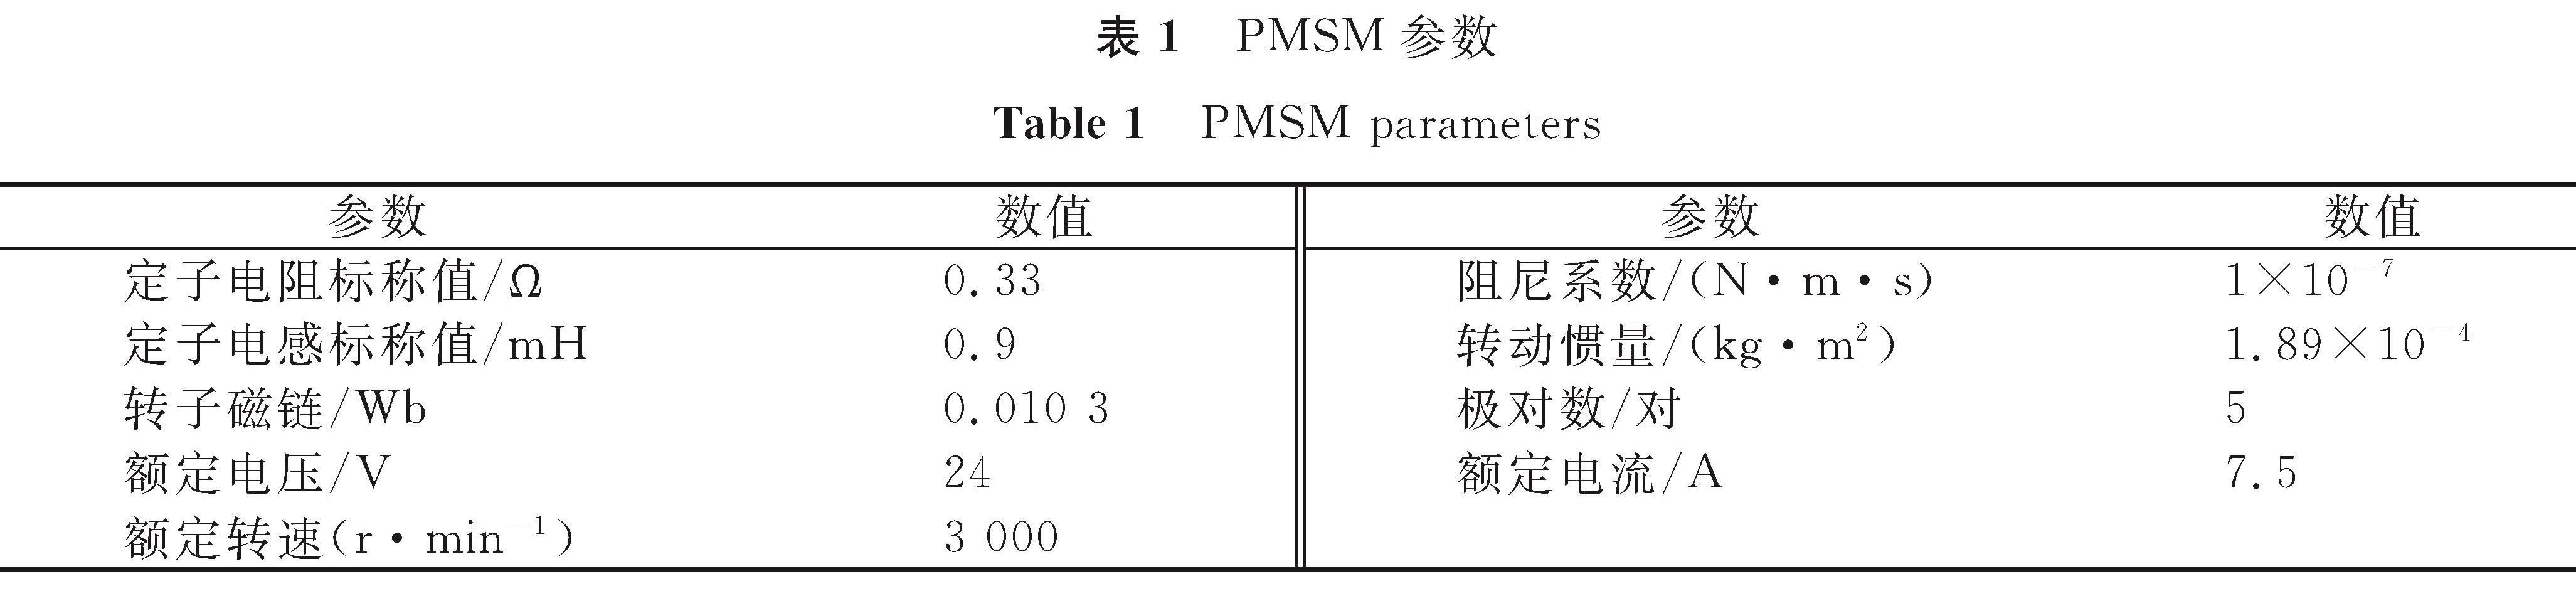 表1 PMSM参数<br/>Table 1 PMSM parameters